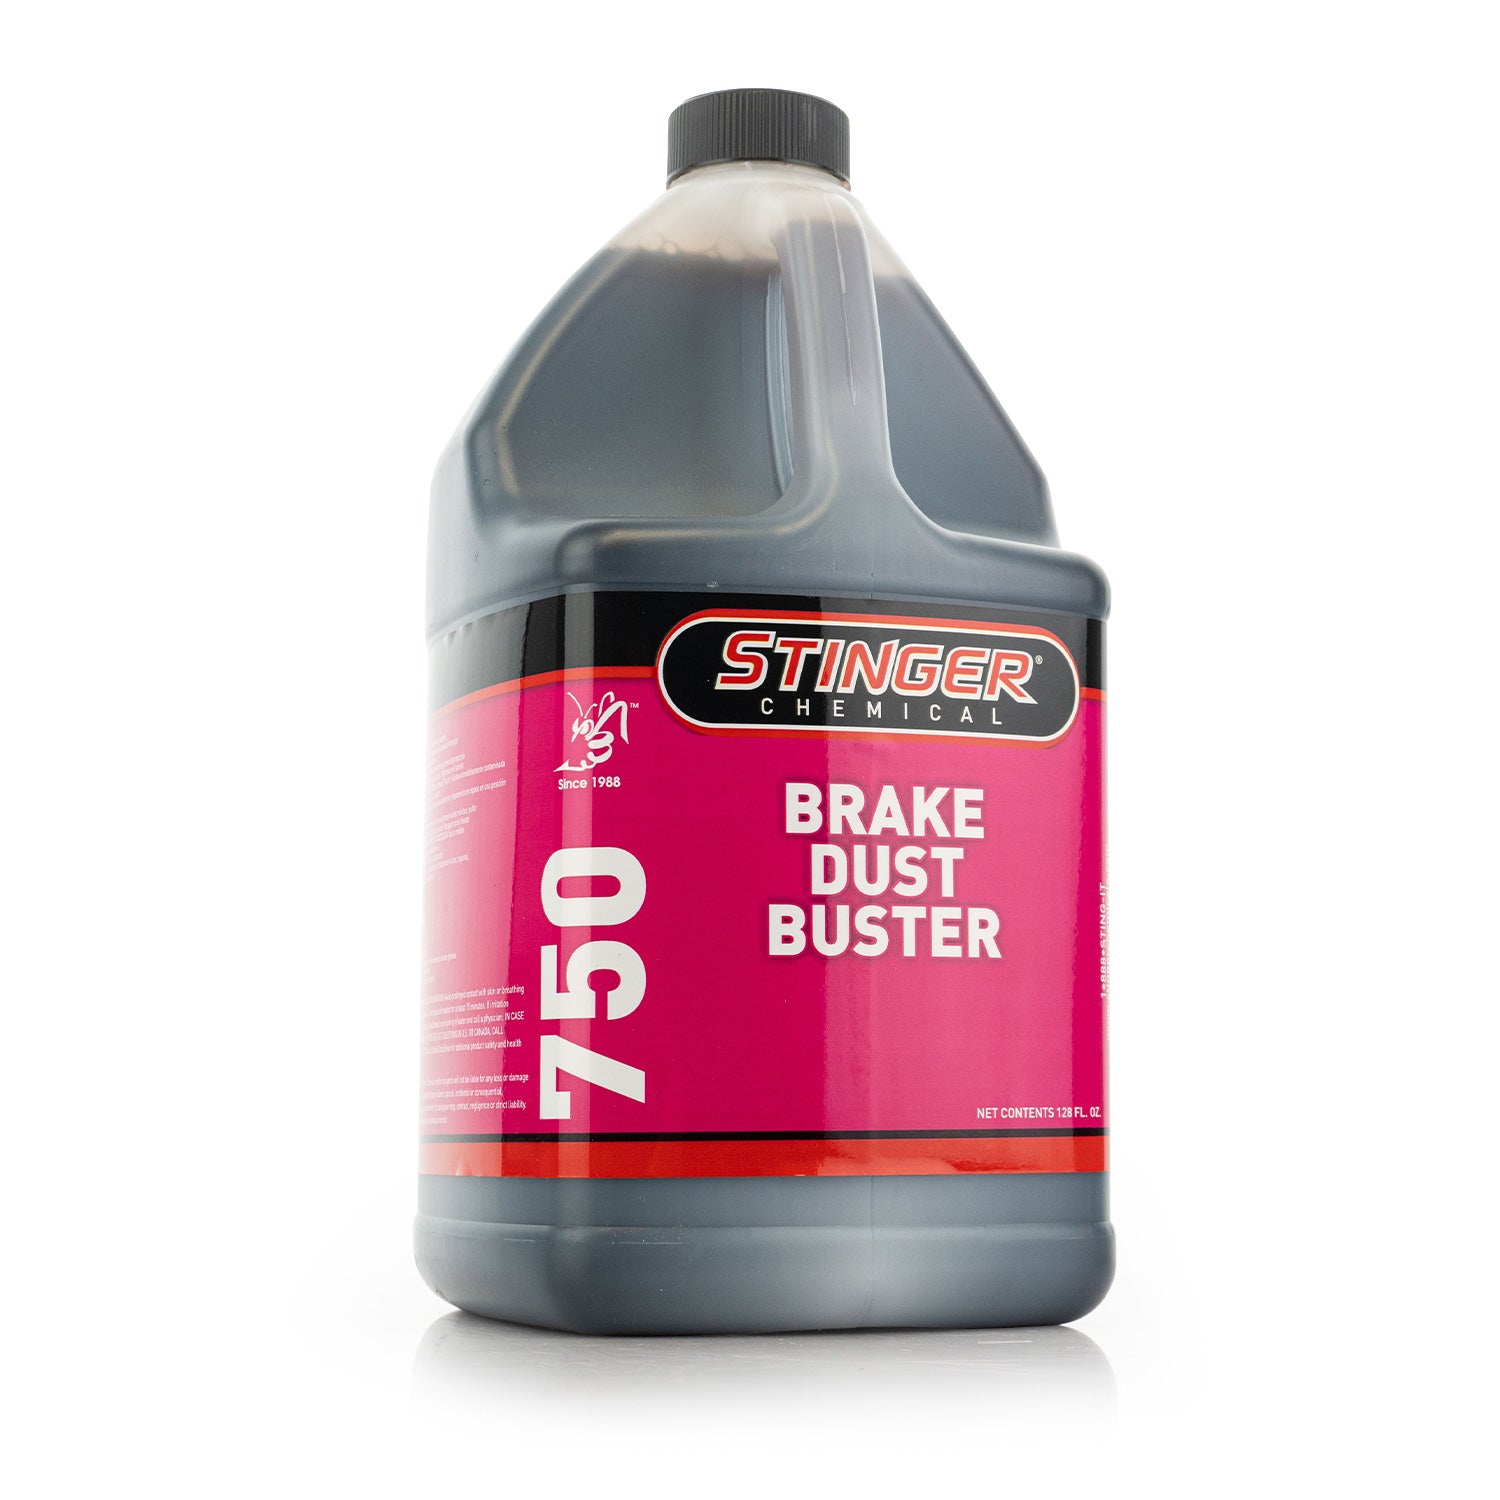 Stinger Chemical Brake Dust Buster